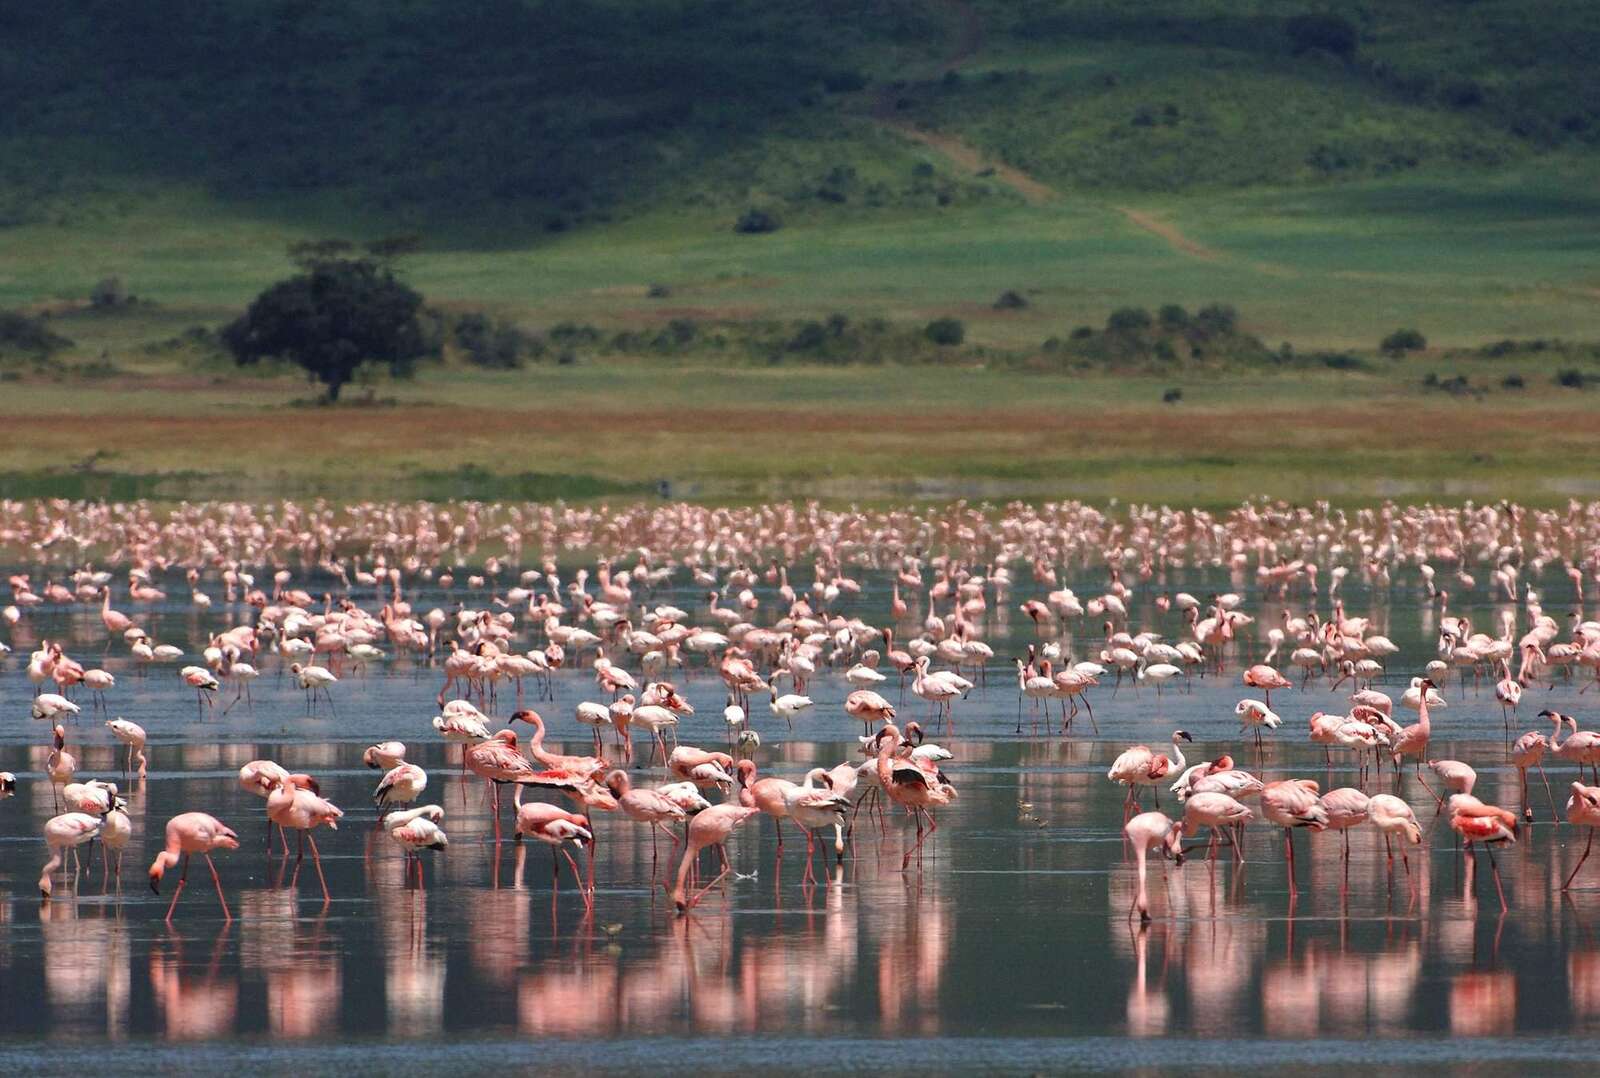 Lake Manyara